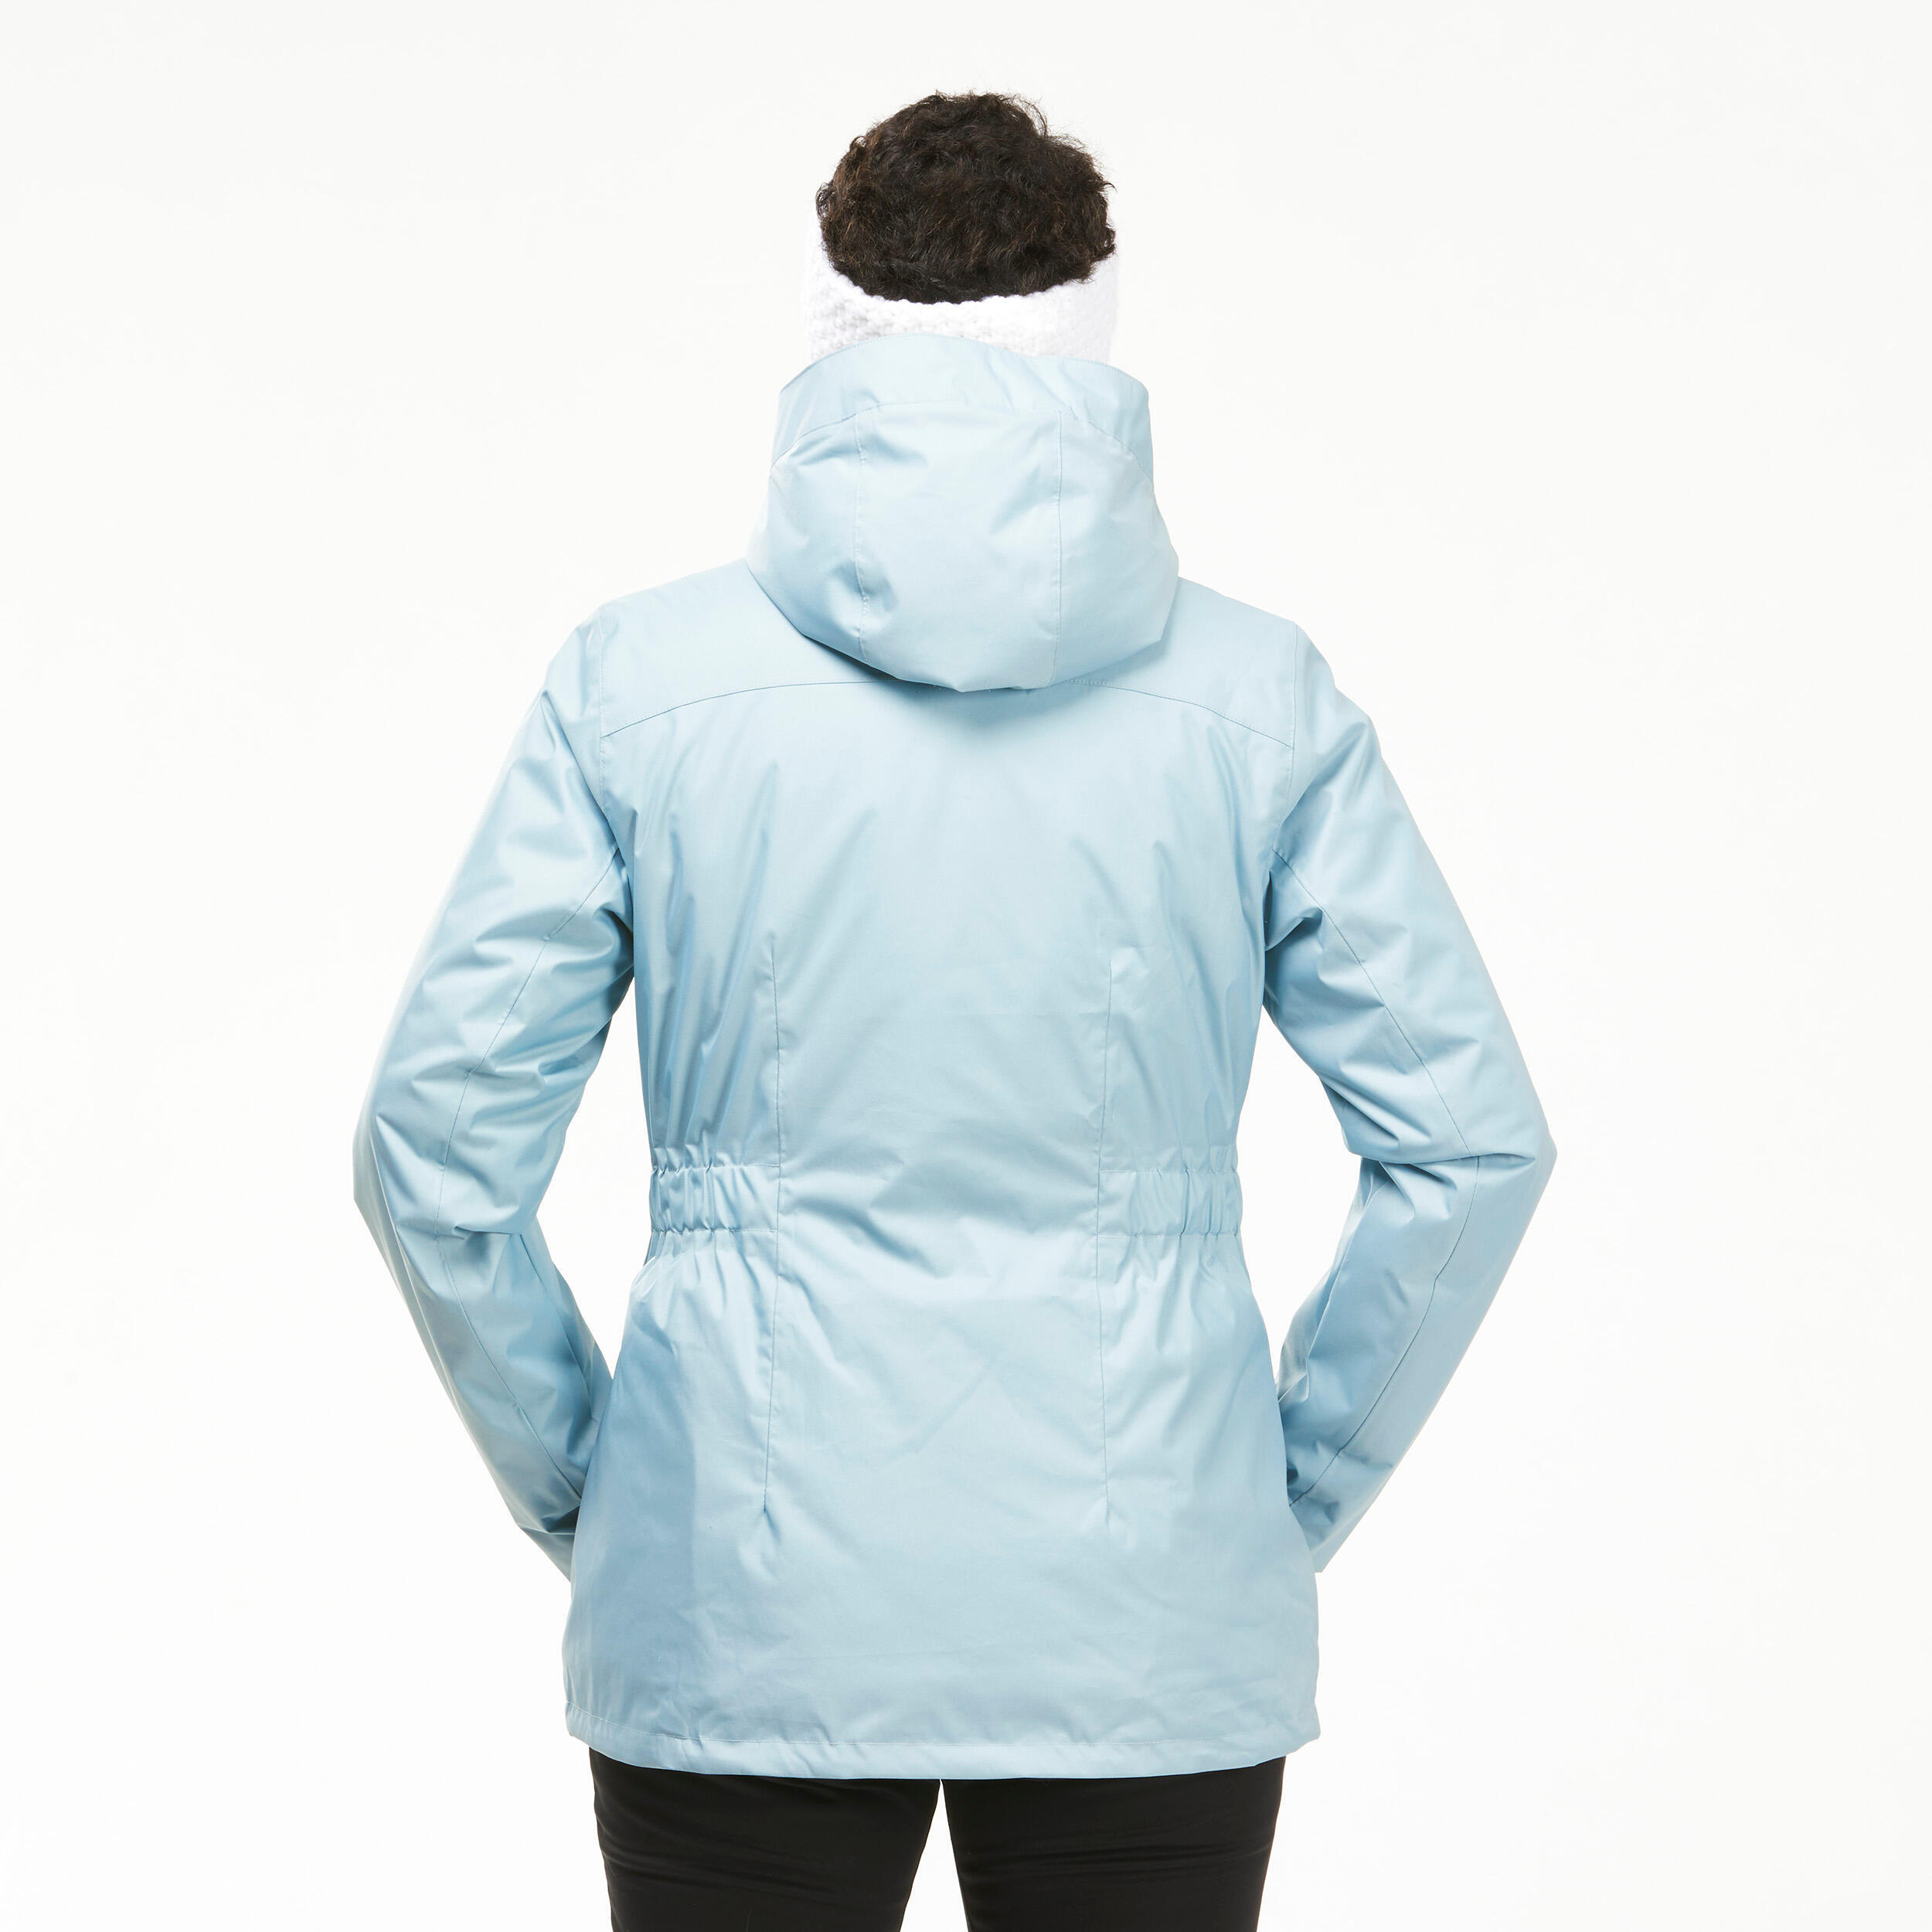 Women’s hiking waterproof winter jacket - SH500 -10°C 6/12